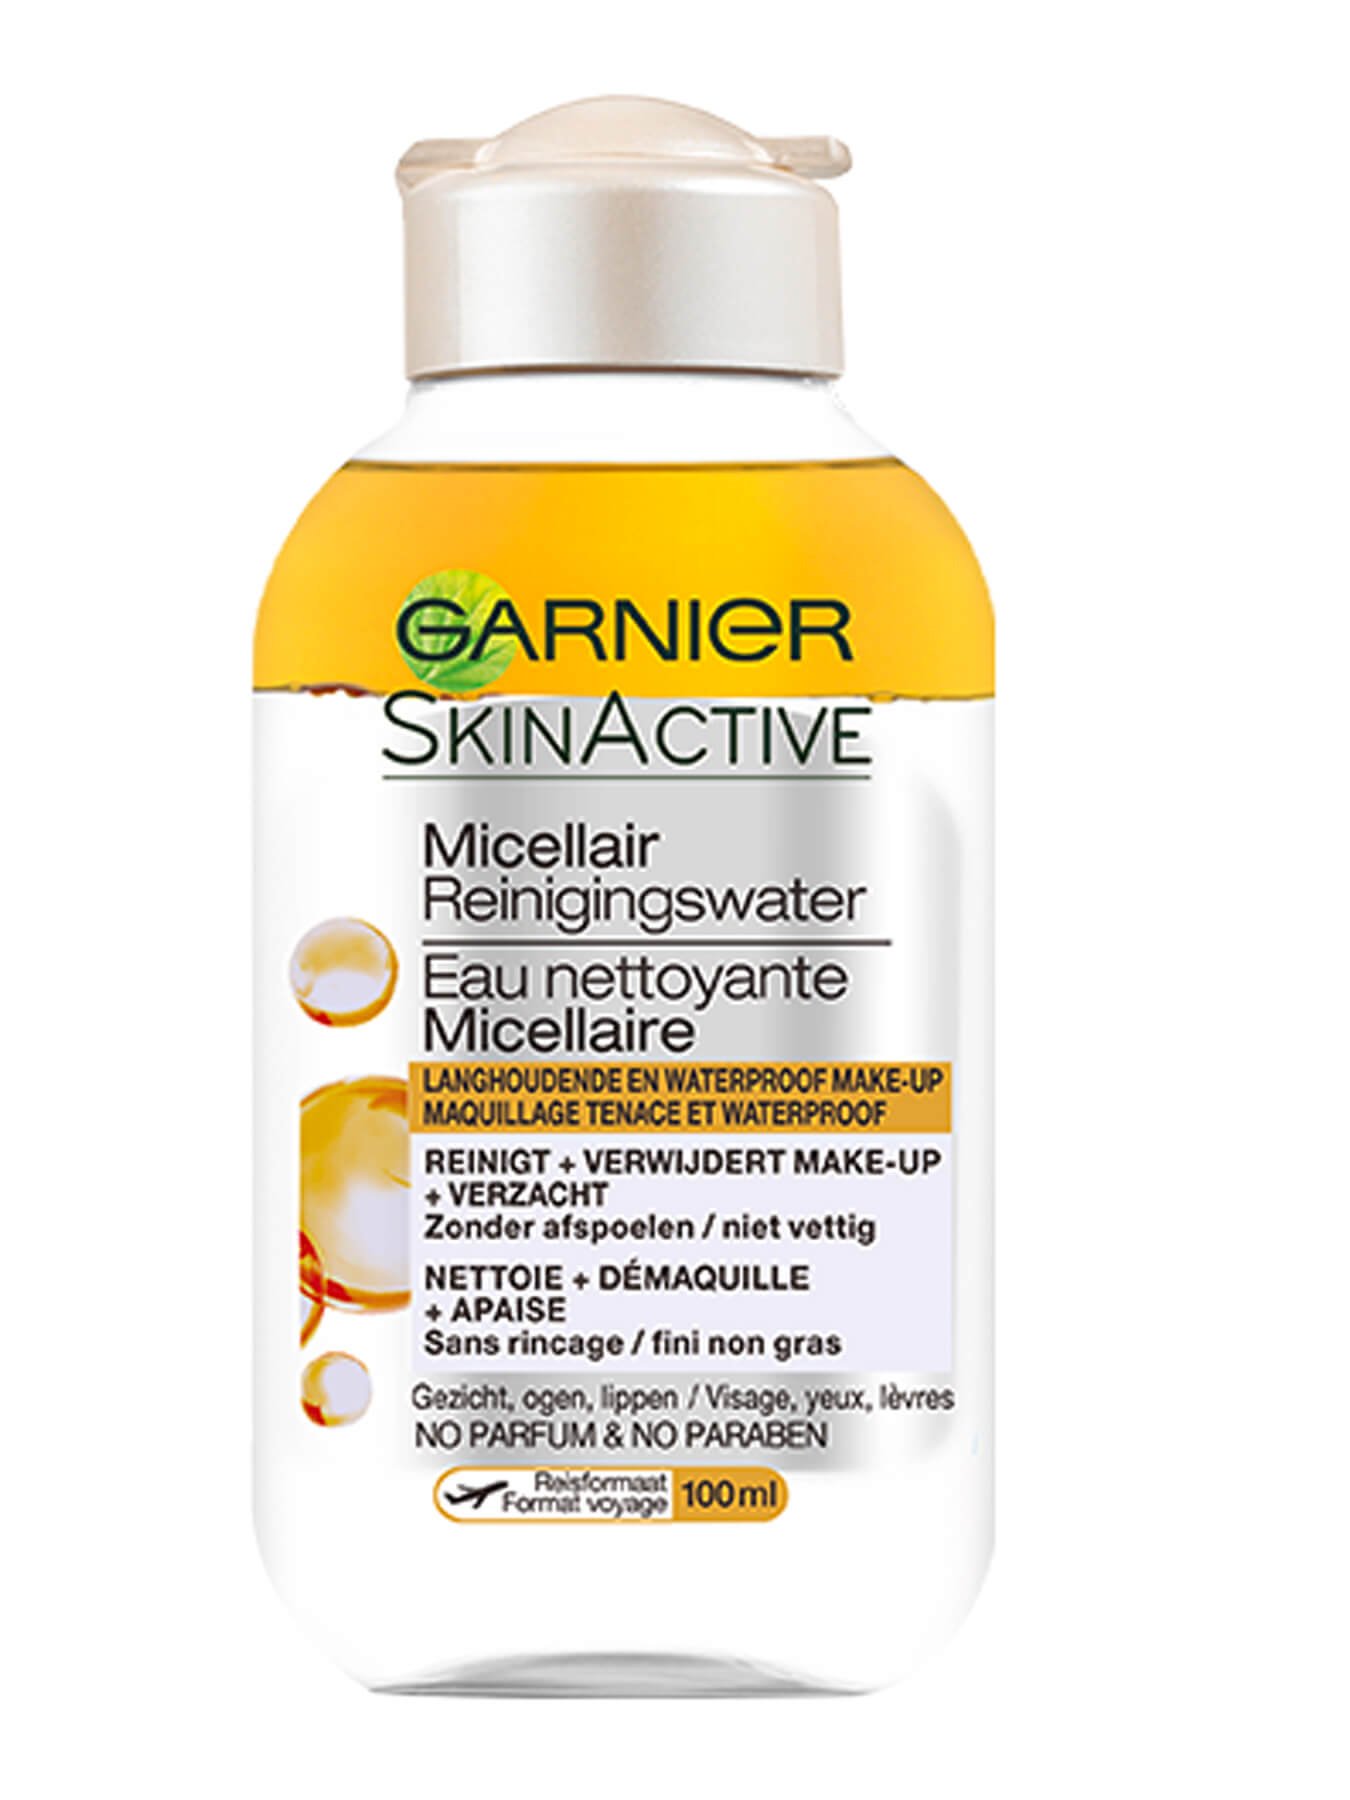 Garnier SkinActive eau nettoyante micellaire visage, yeux, levres